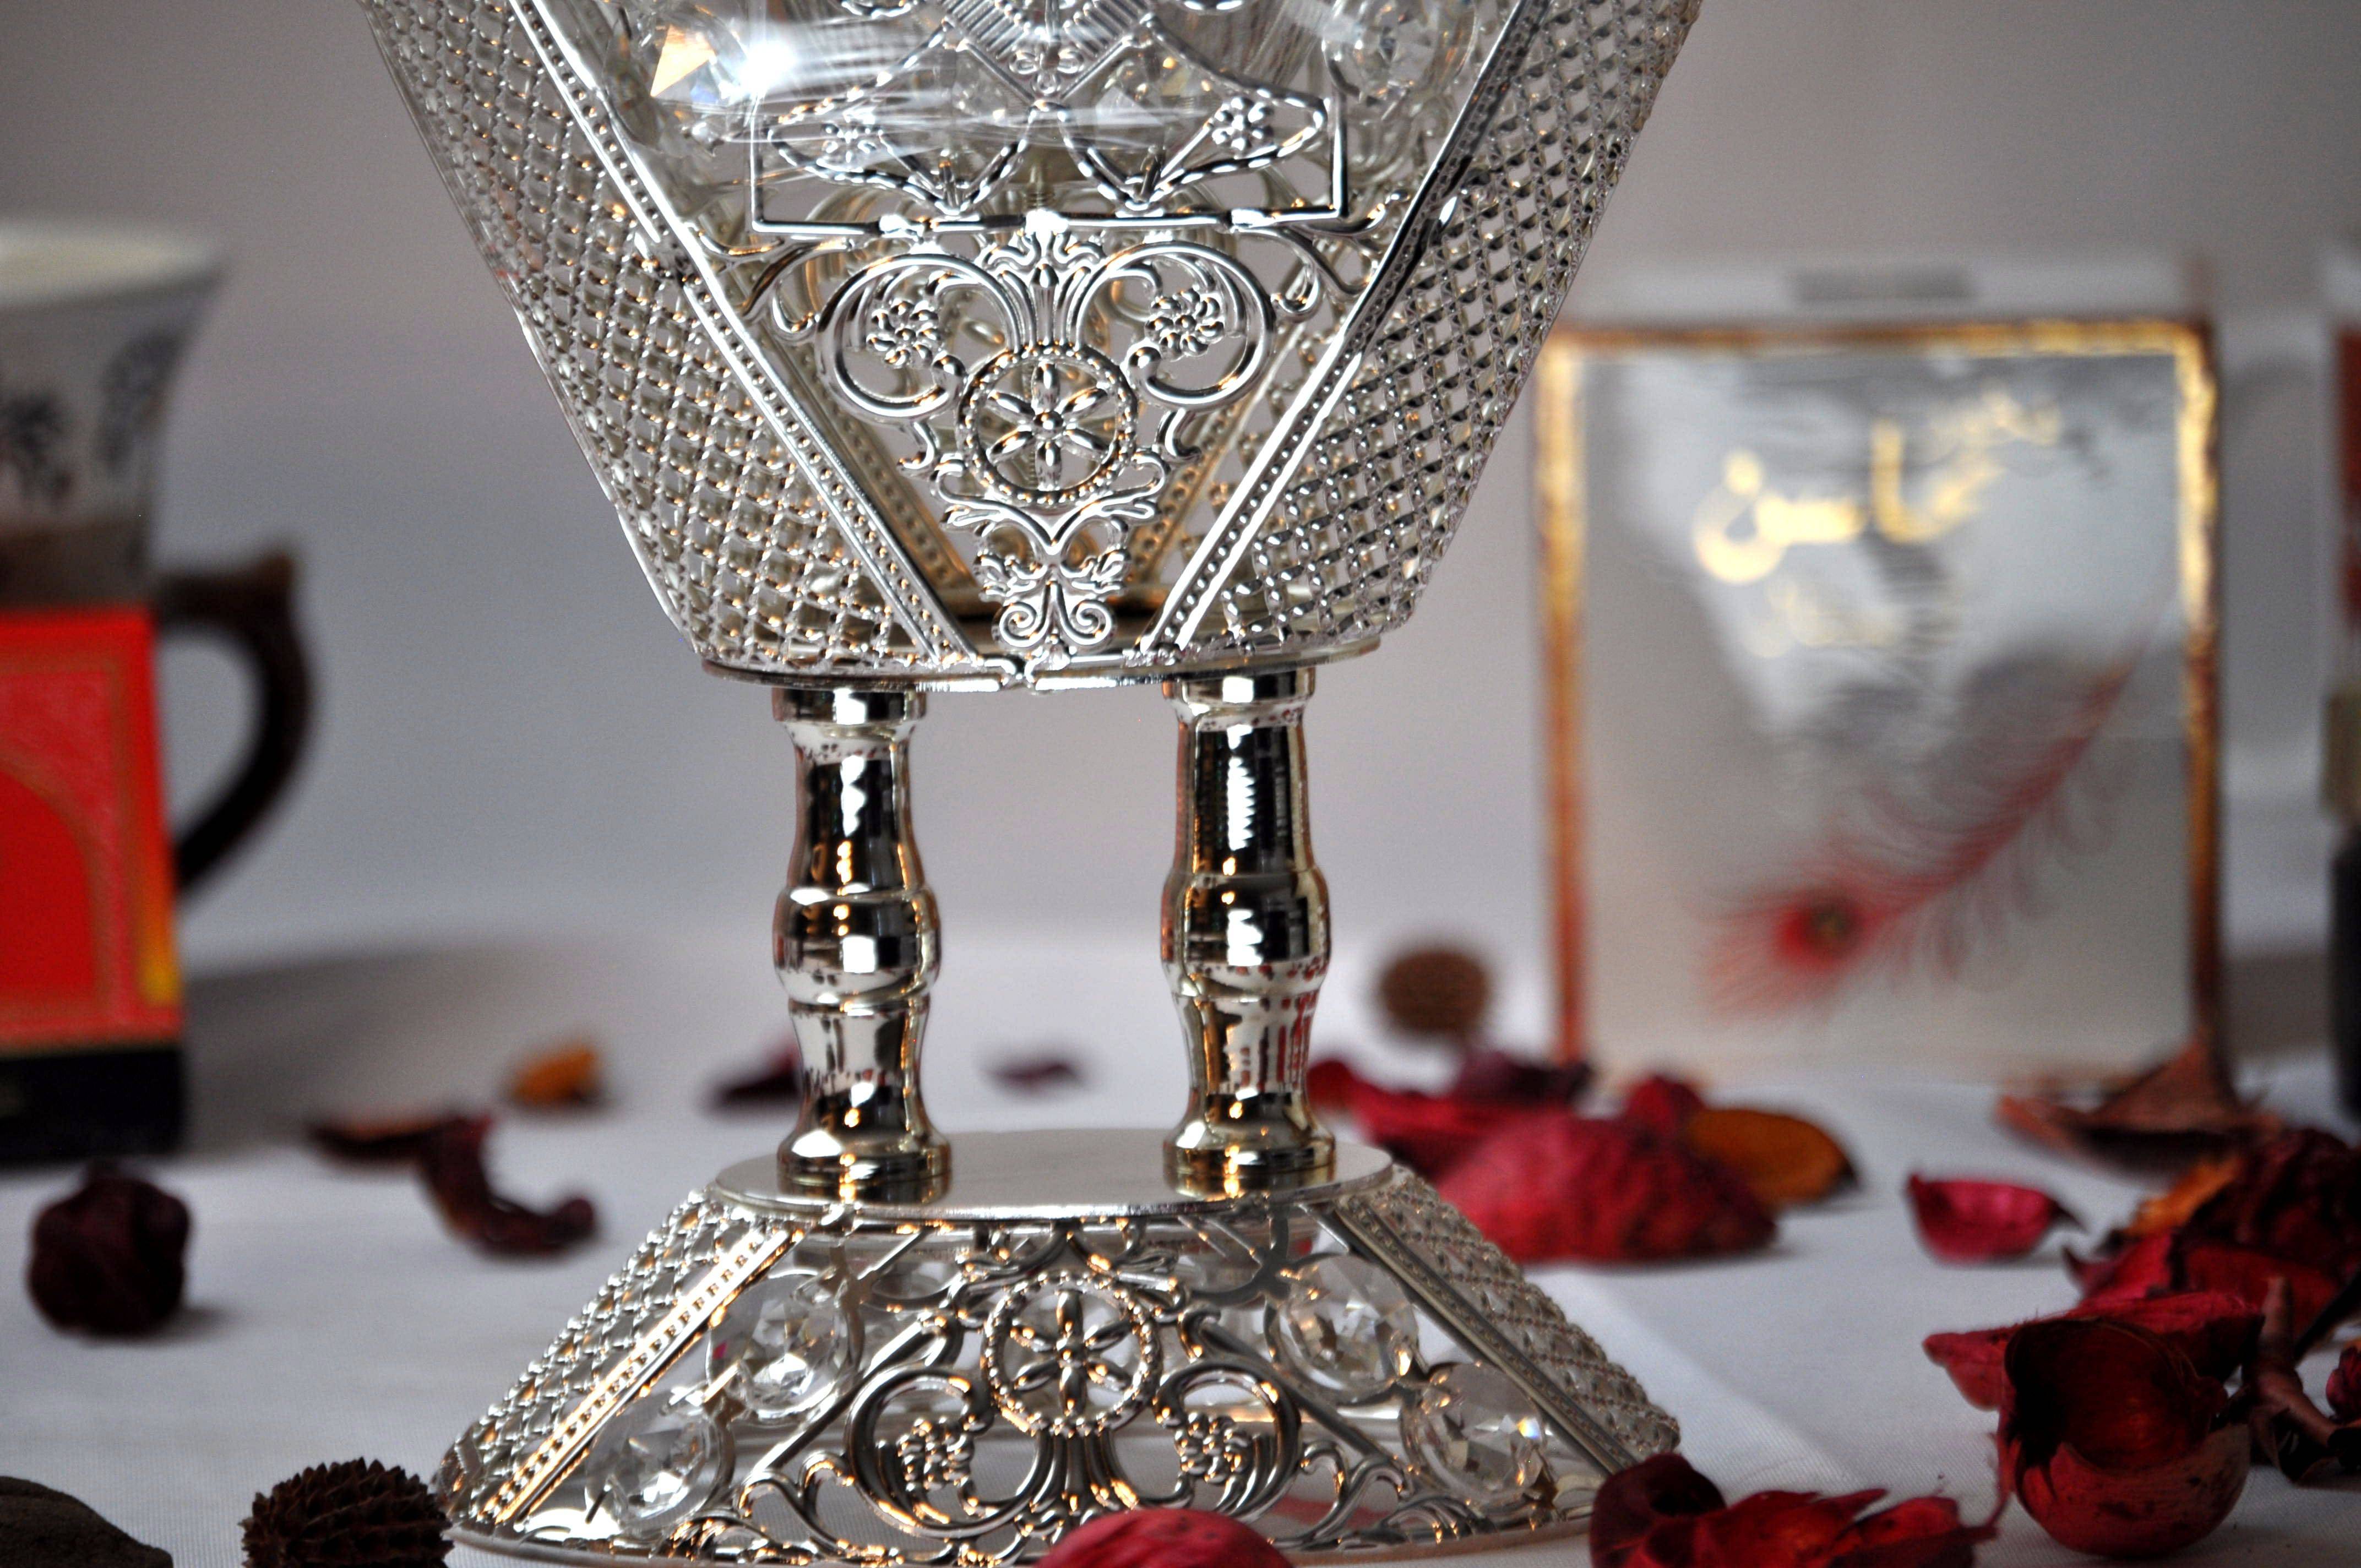 Arab Incense Bakhoor Burner - 9 inch Silver by Intense Oud - Intense oud